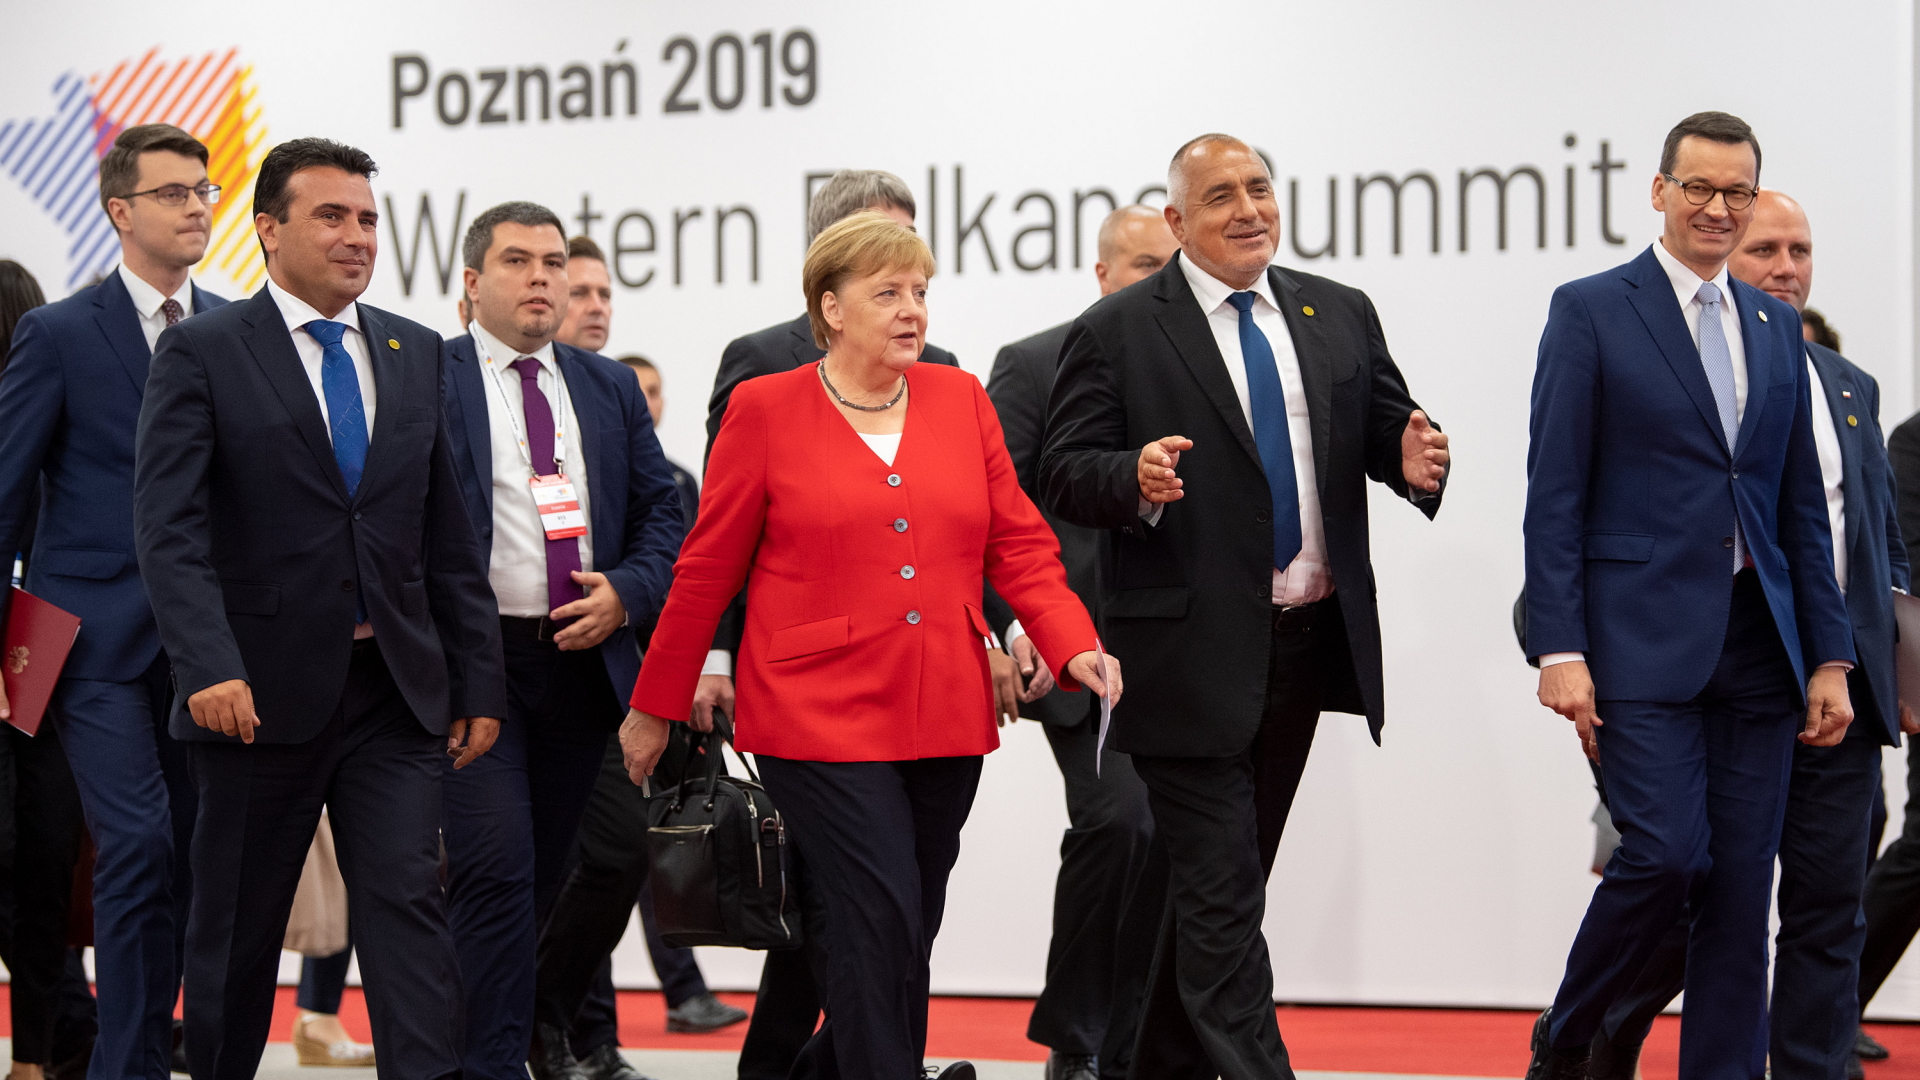 Politiker auf dem Weg zur Pressekonferenz beim Westbalkan-Gipfel.  | Bildquelle: dpa